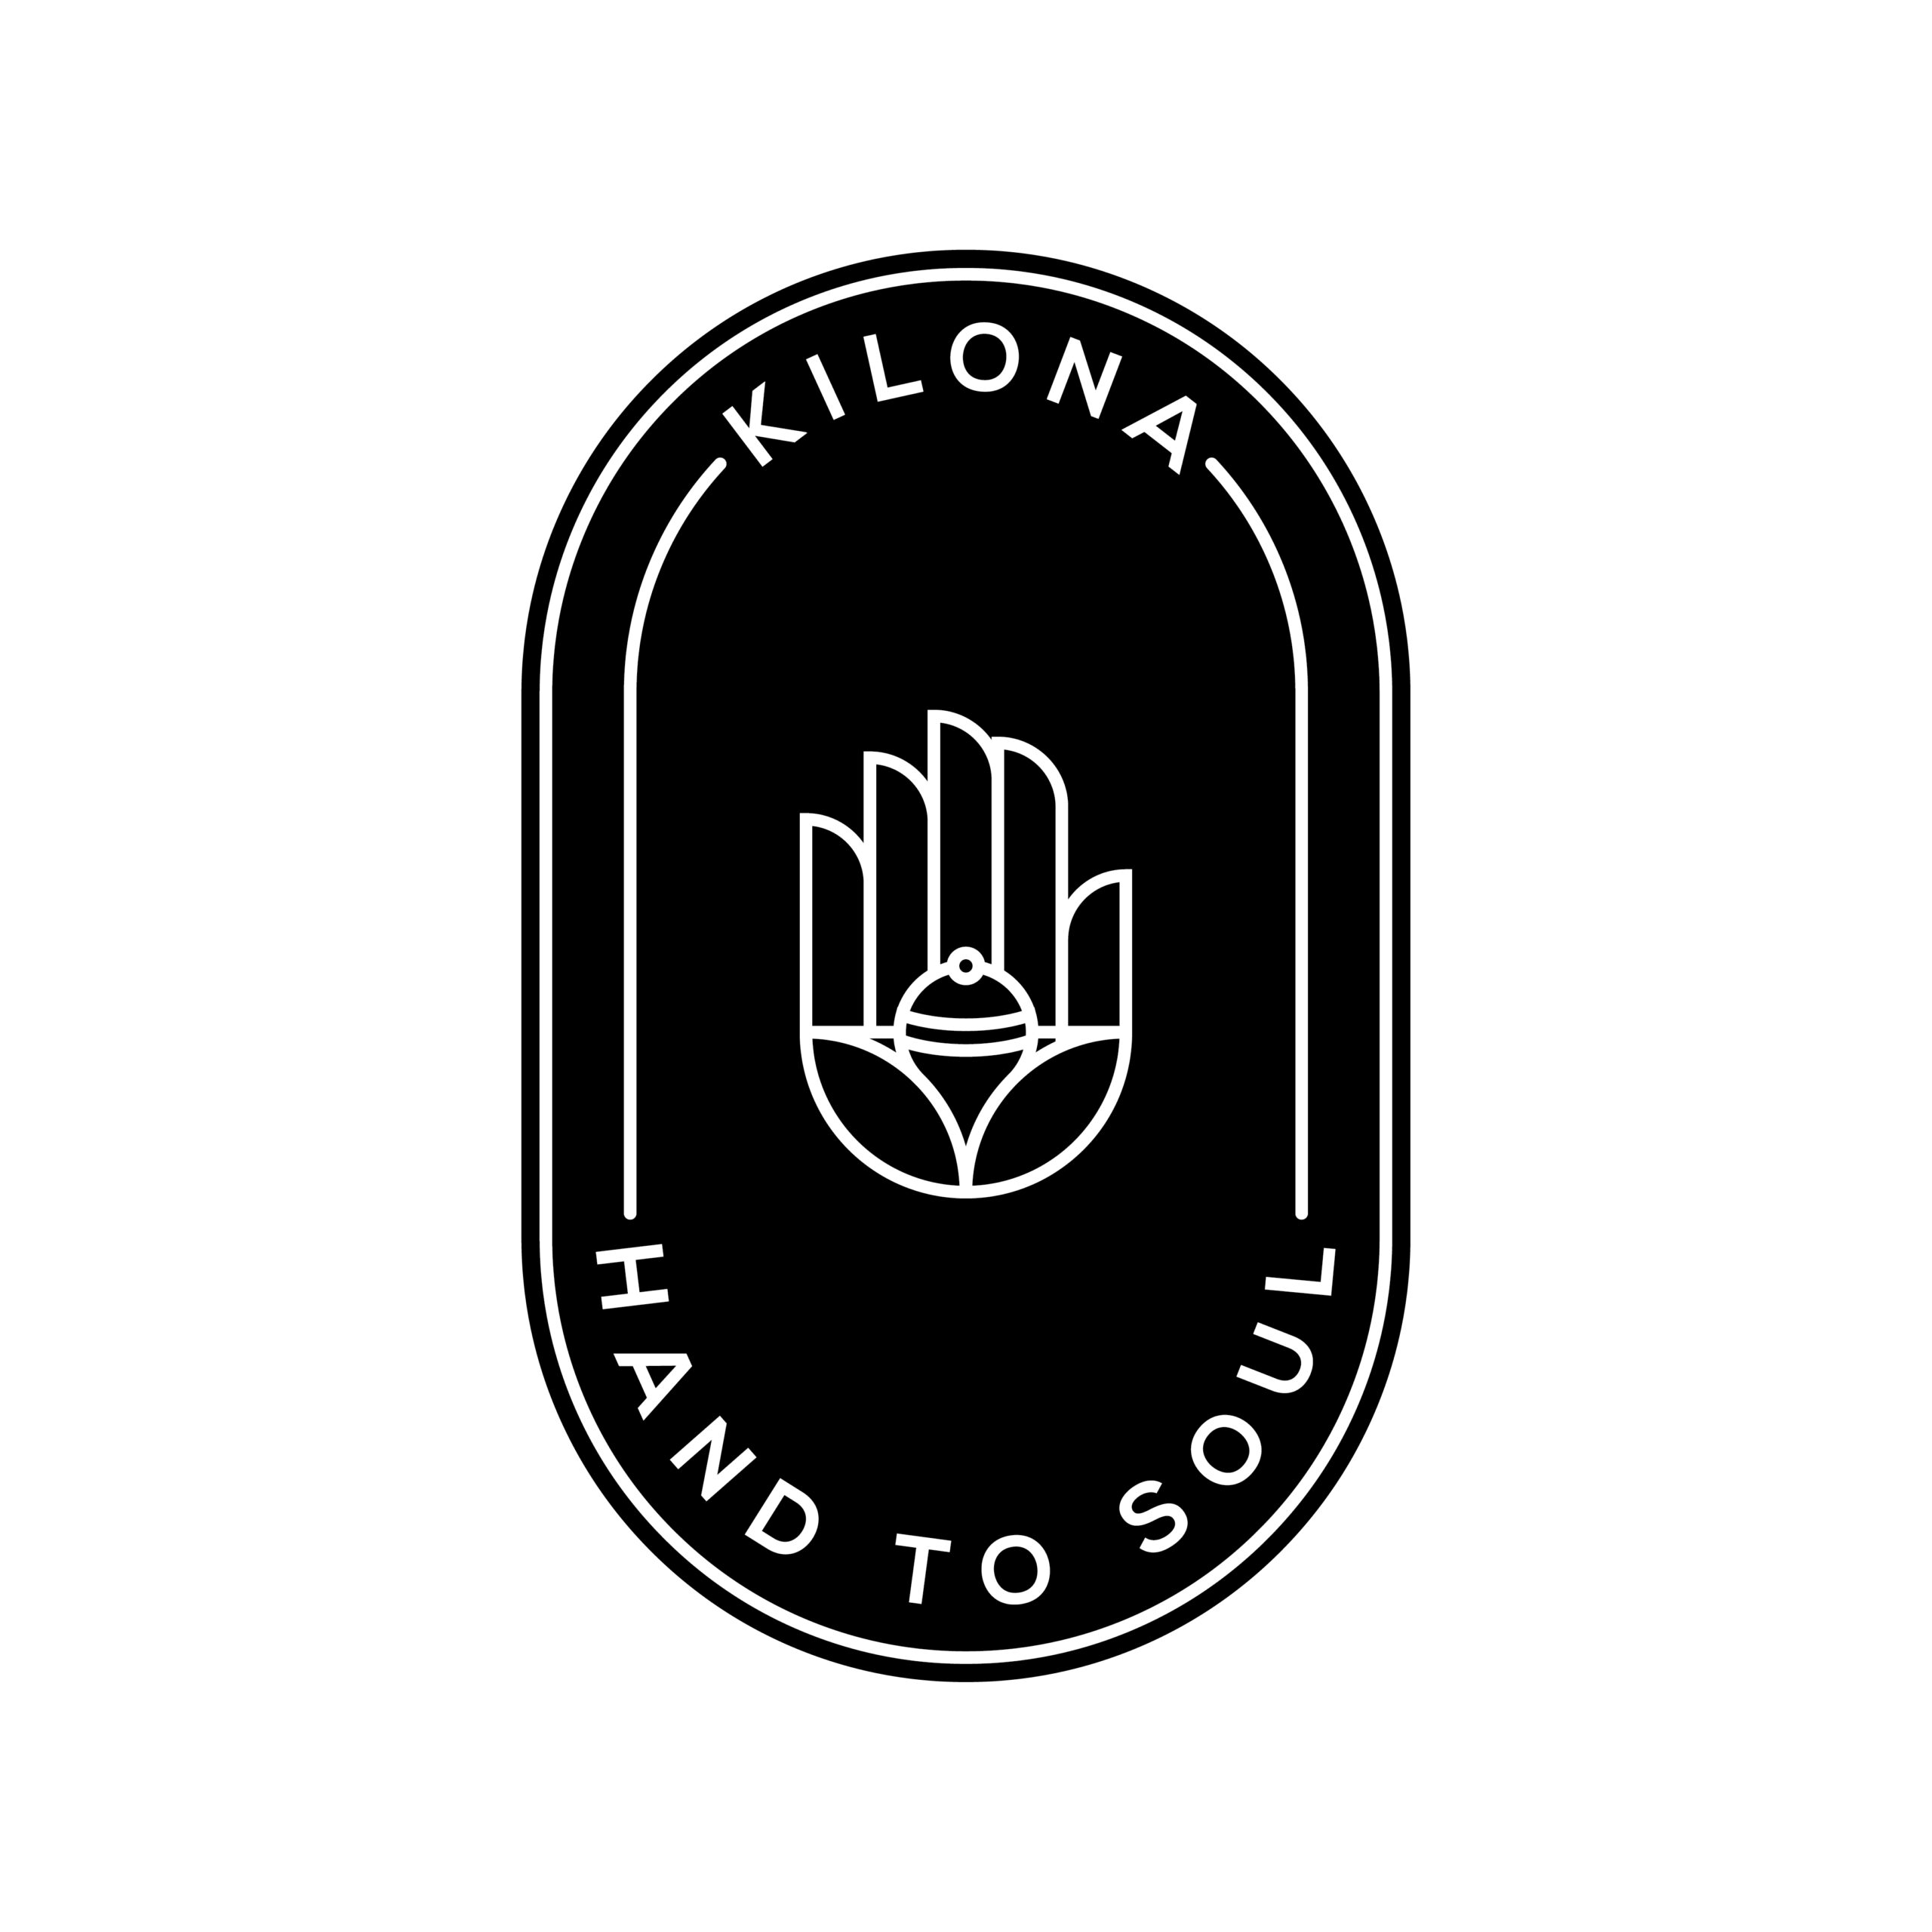 Kilona_Logo-04